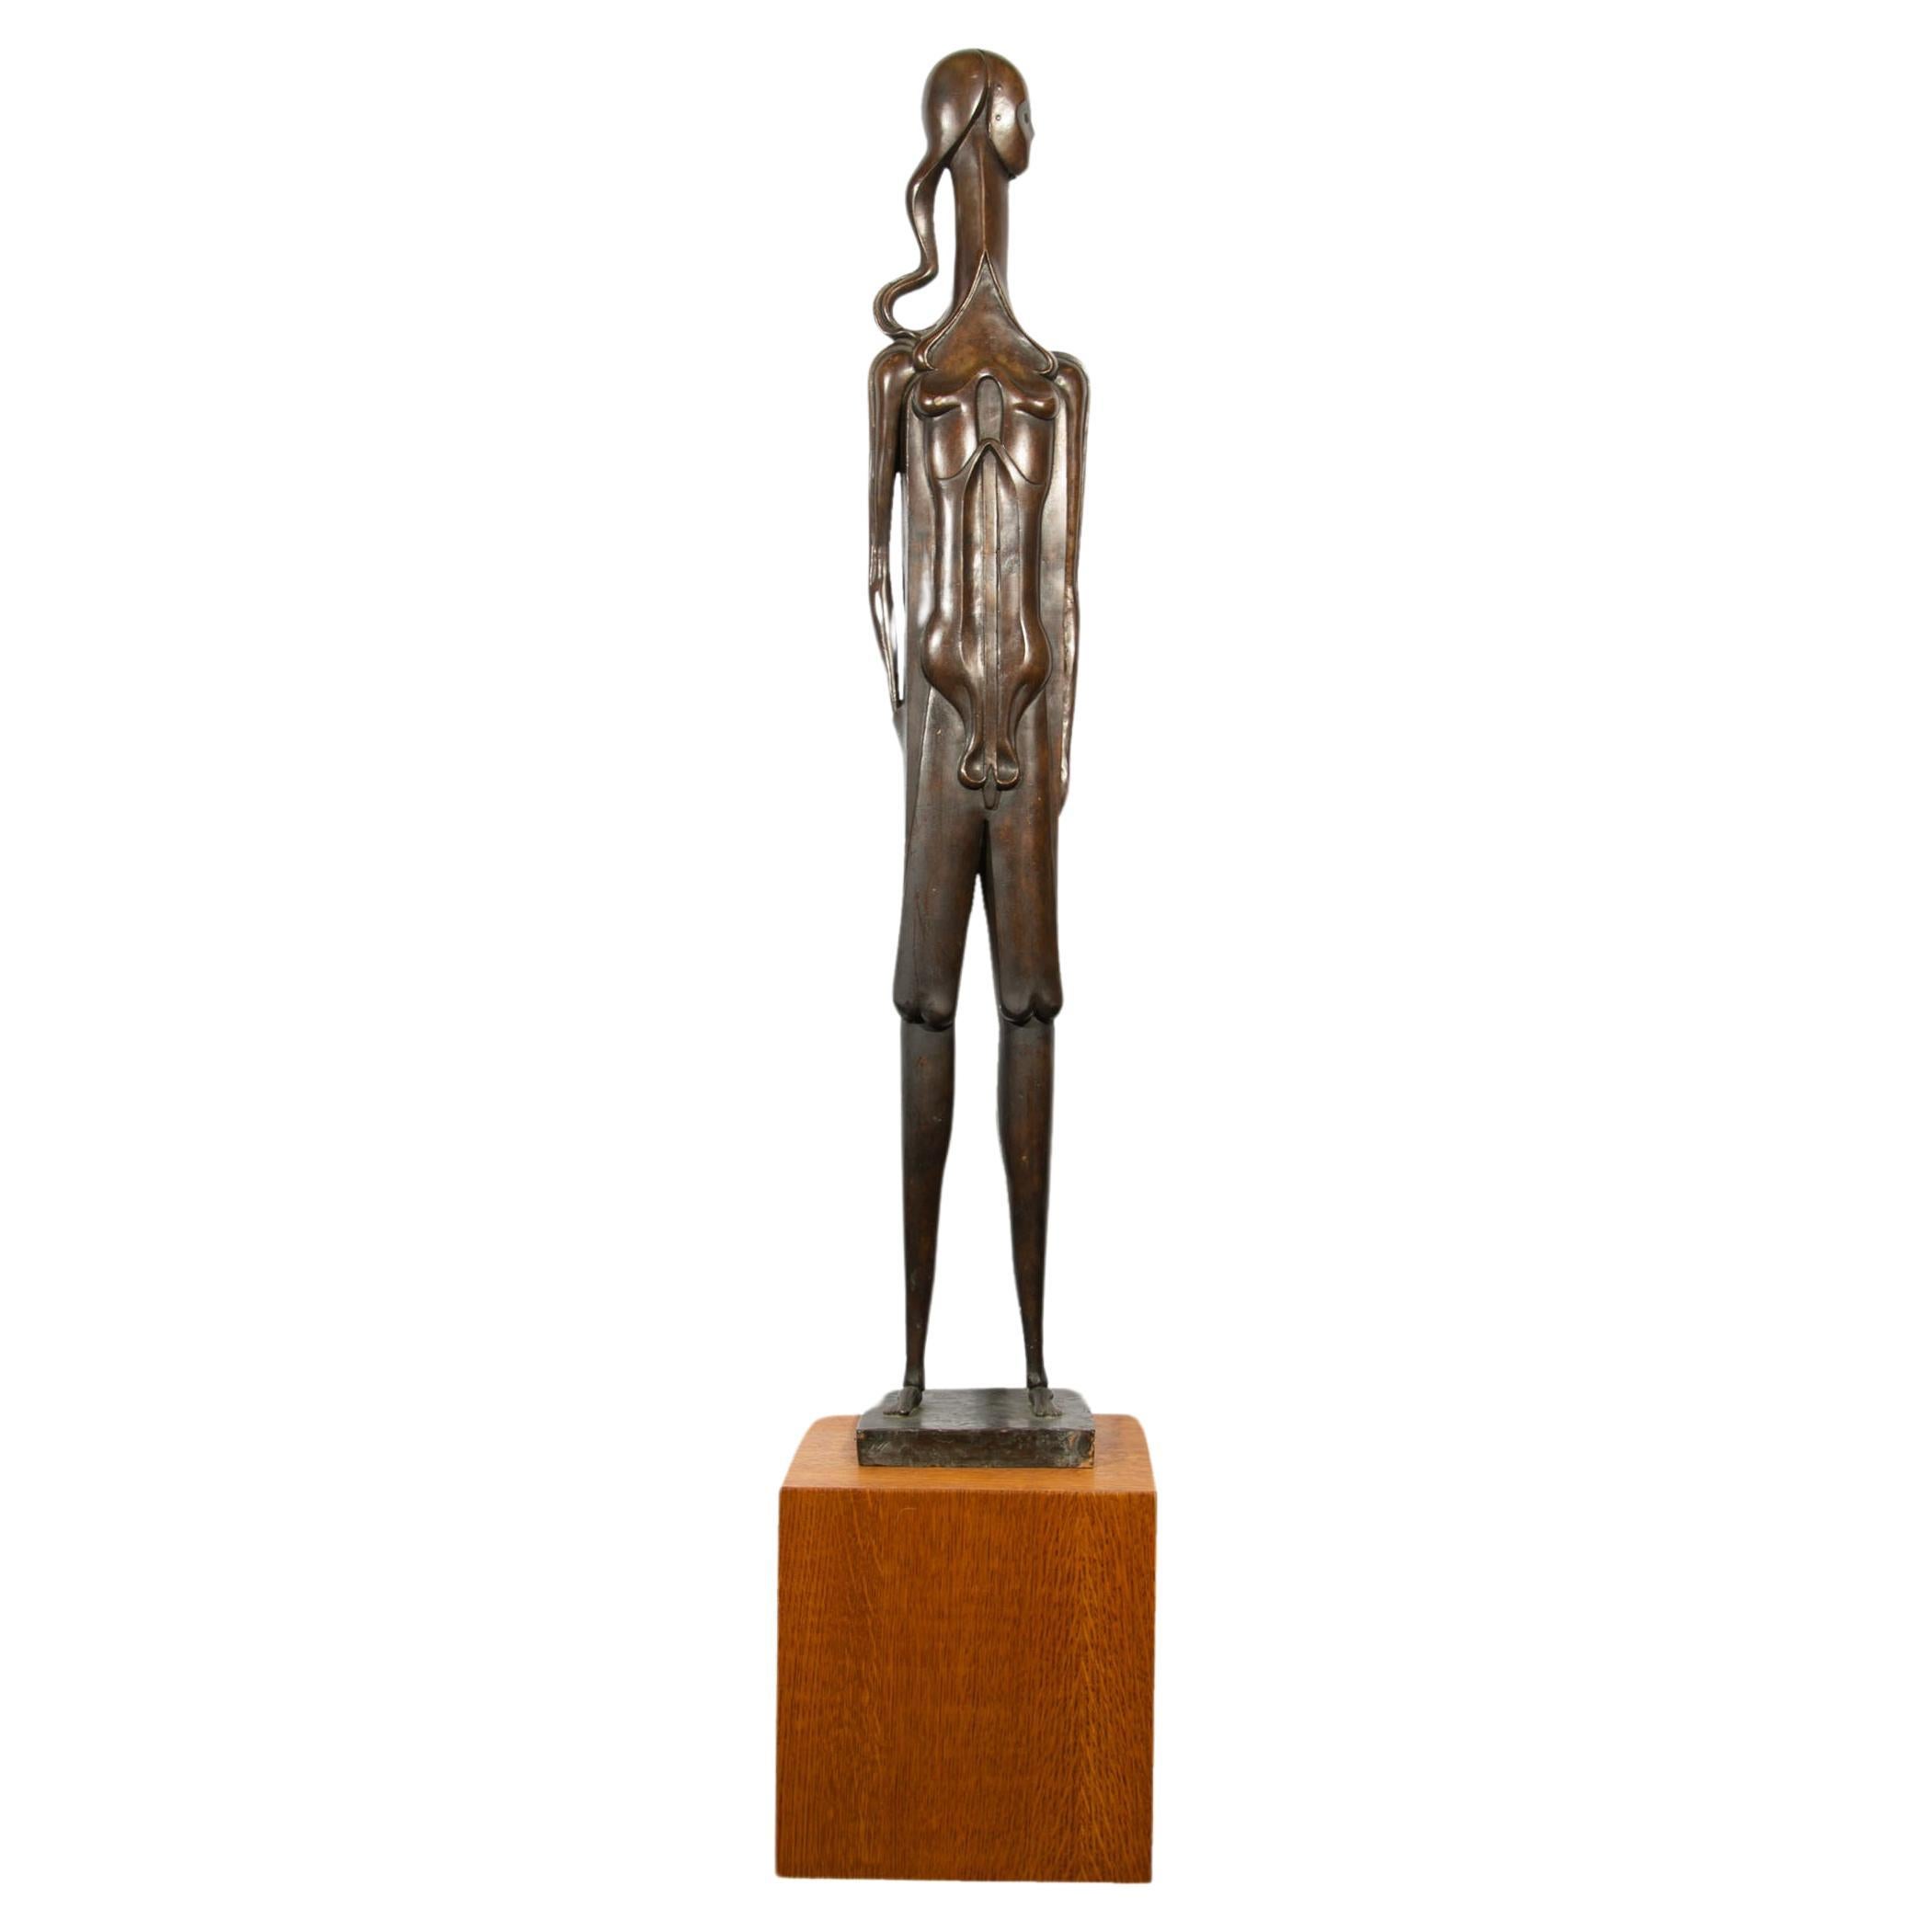 Isidore Grossman Signed 1955 “Fegele” Bronze Sculpture of a Figure For Sale